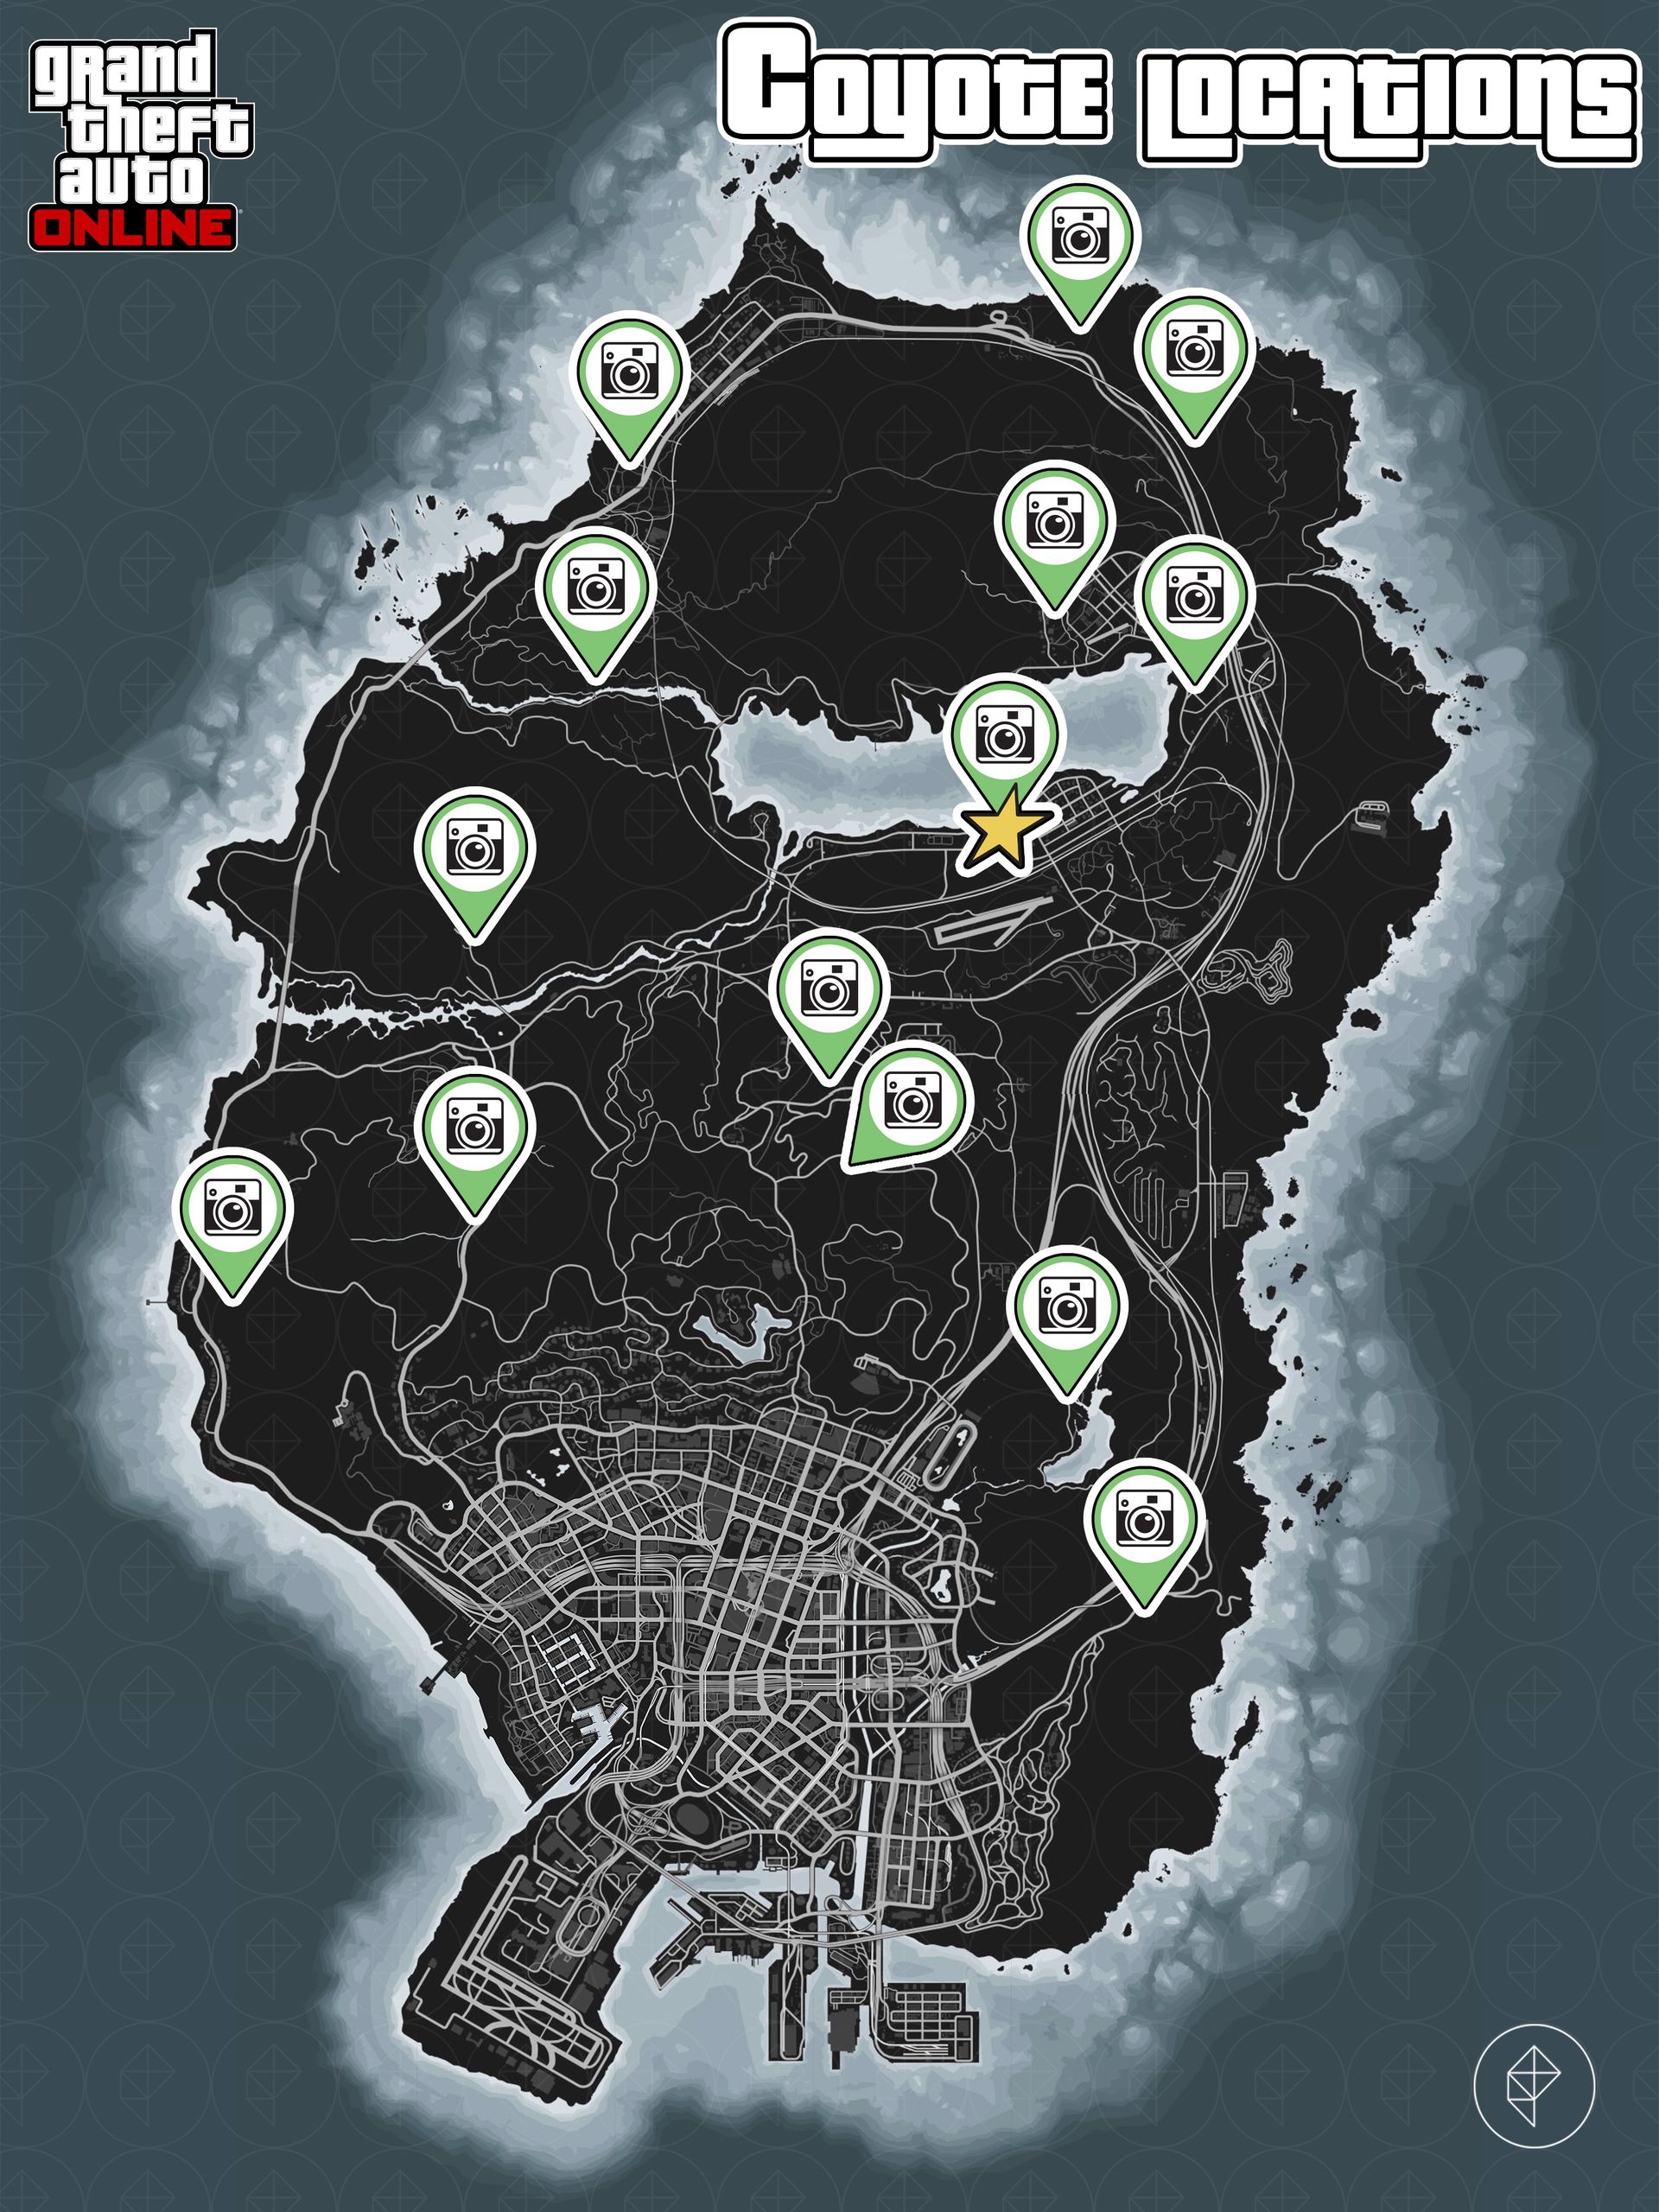 Carte de GTA Online montrant les emplacements des coyotes